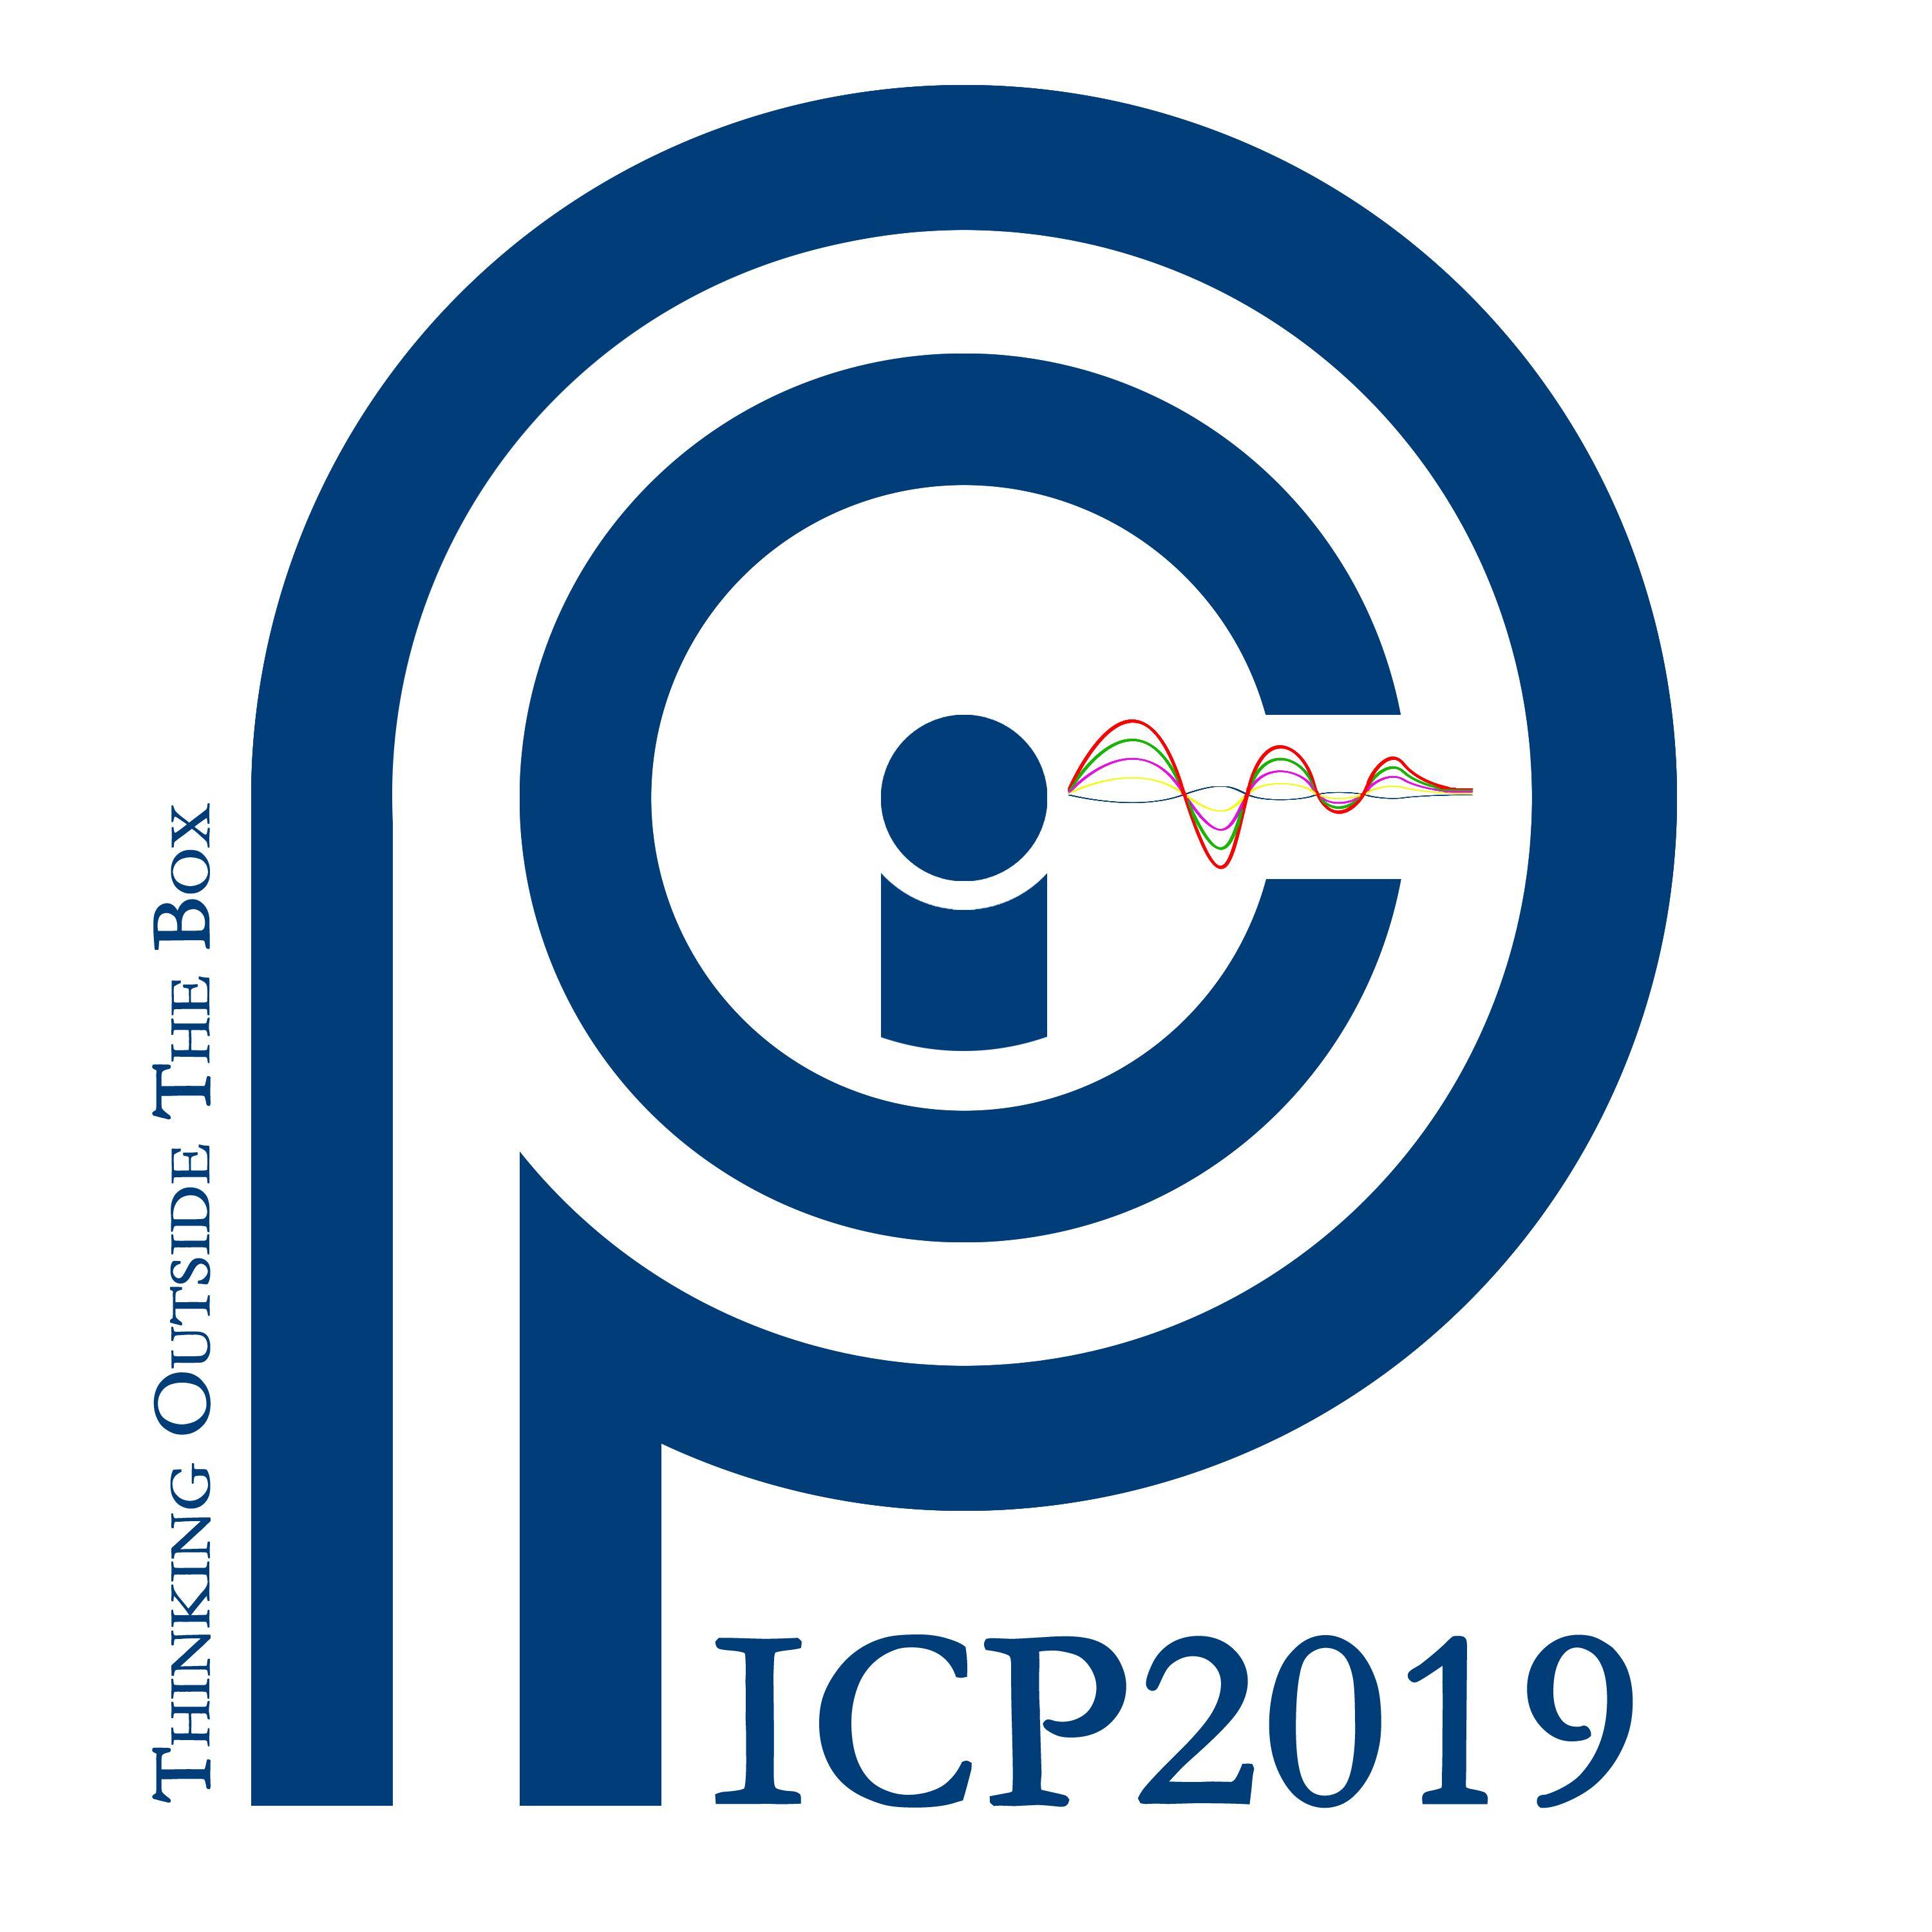 ICP Logo - ICP 2019 Logo